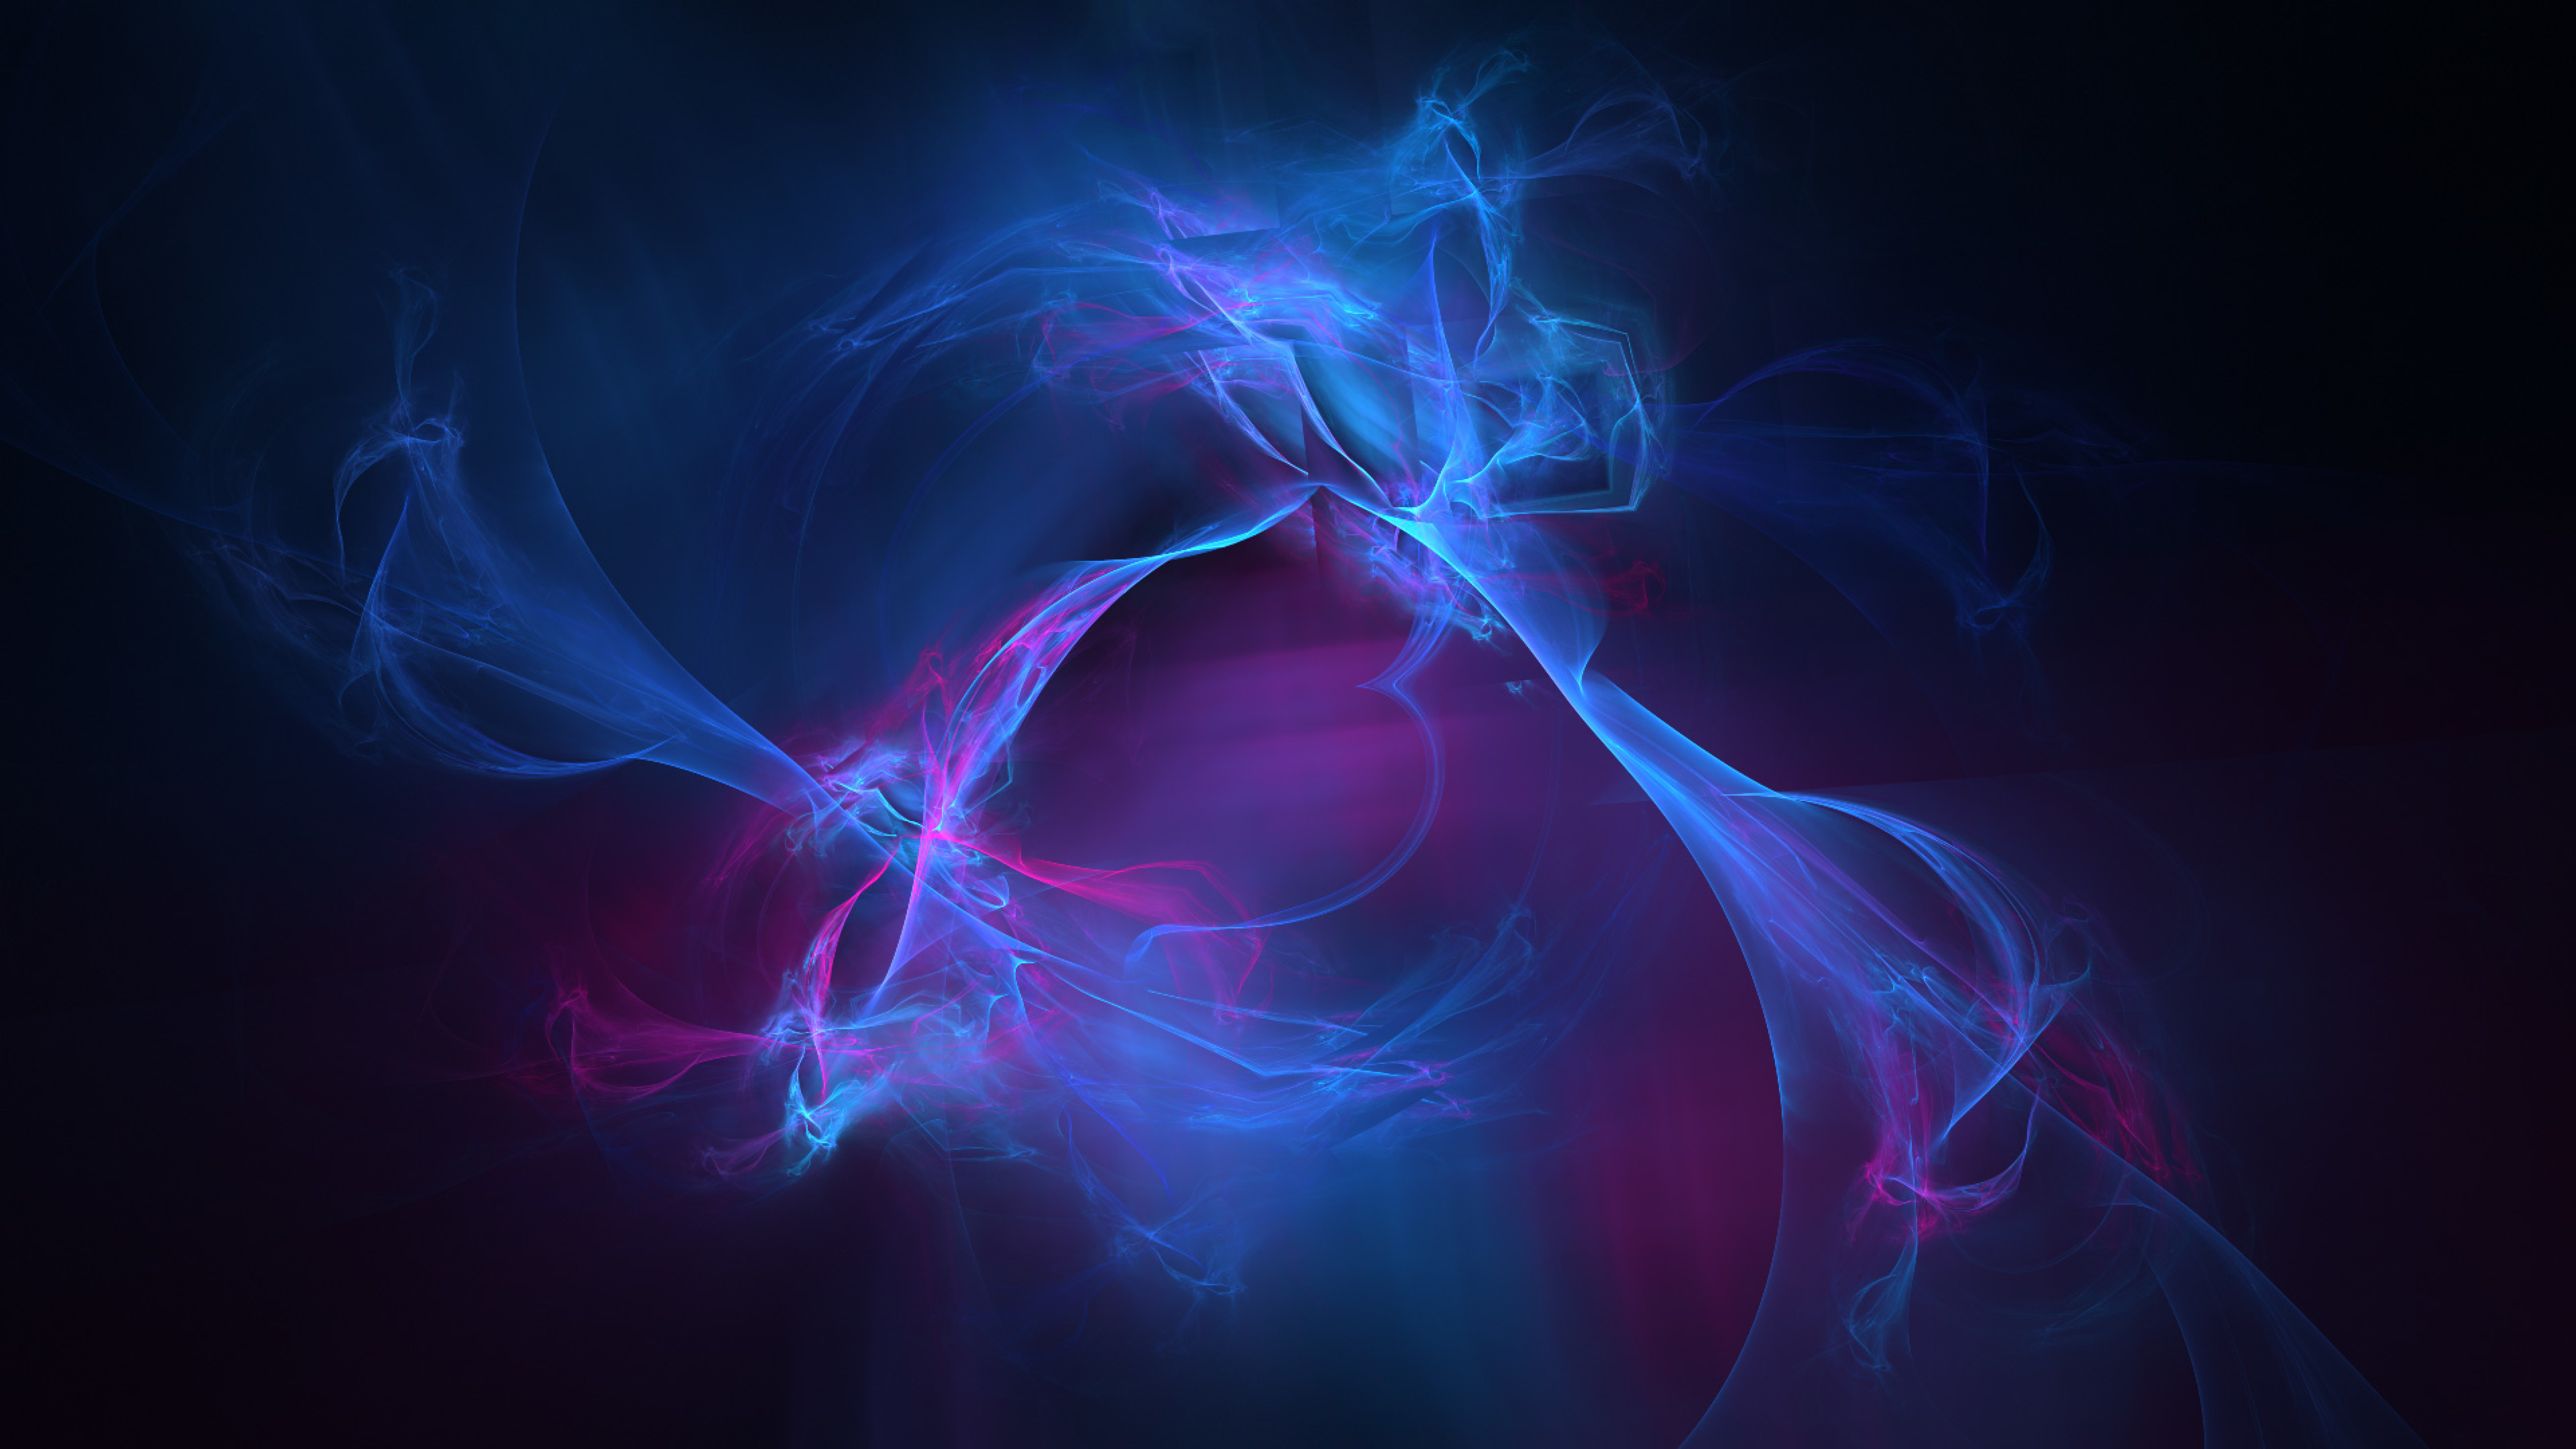 fond d'écran flamme bleue,bleu,bleu électrique,art fractal,lumière,violet